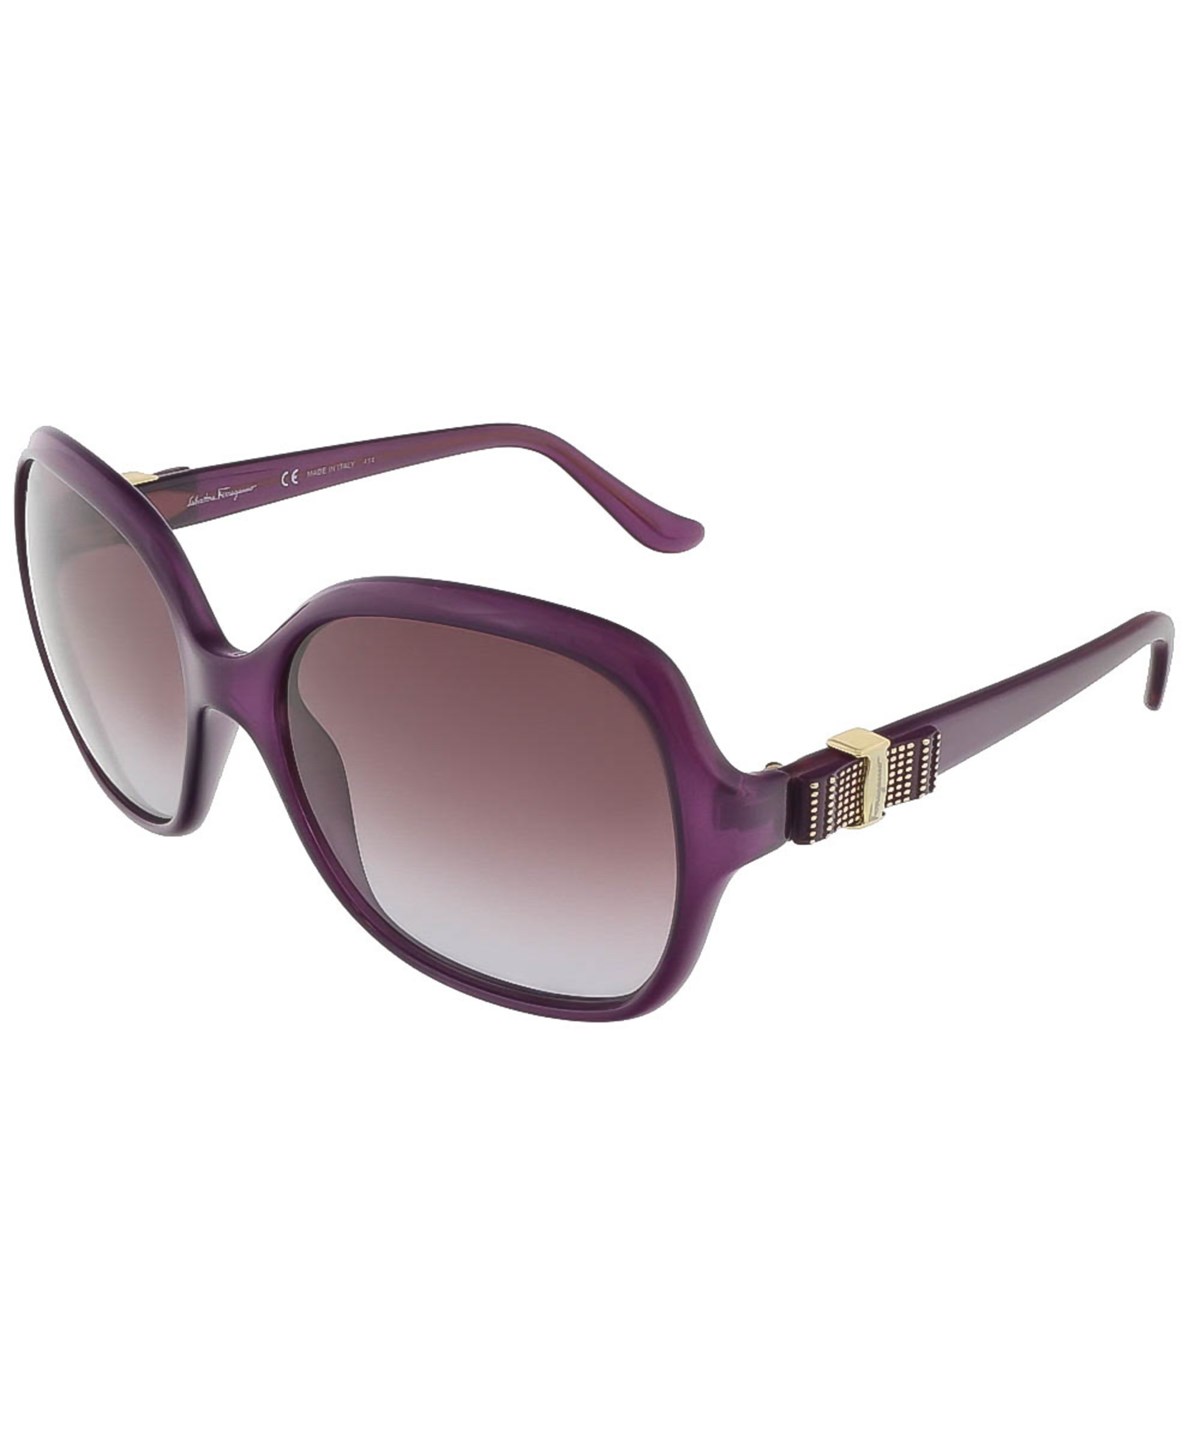 Salvatore Ferragamo Sf761s 513 Purple Oversized Square Sunglasses ...